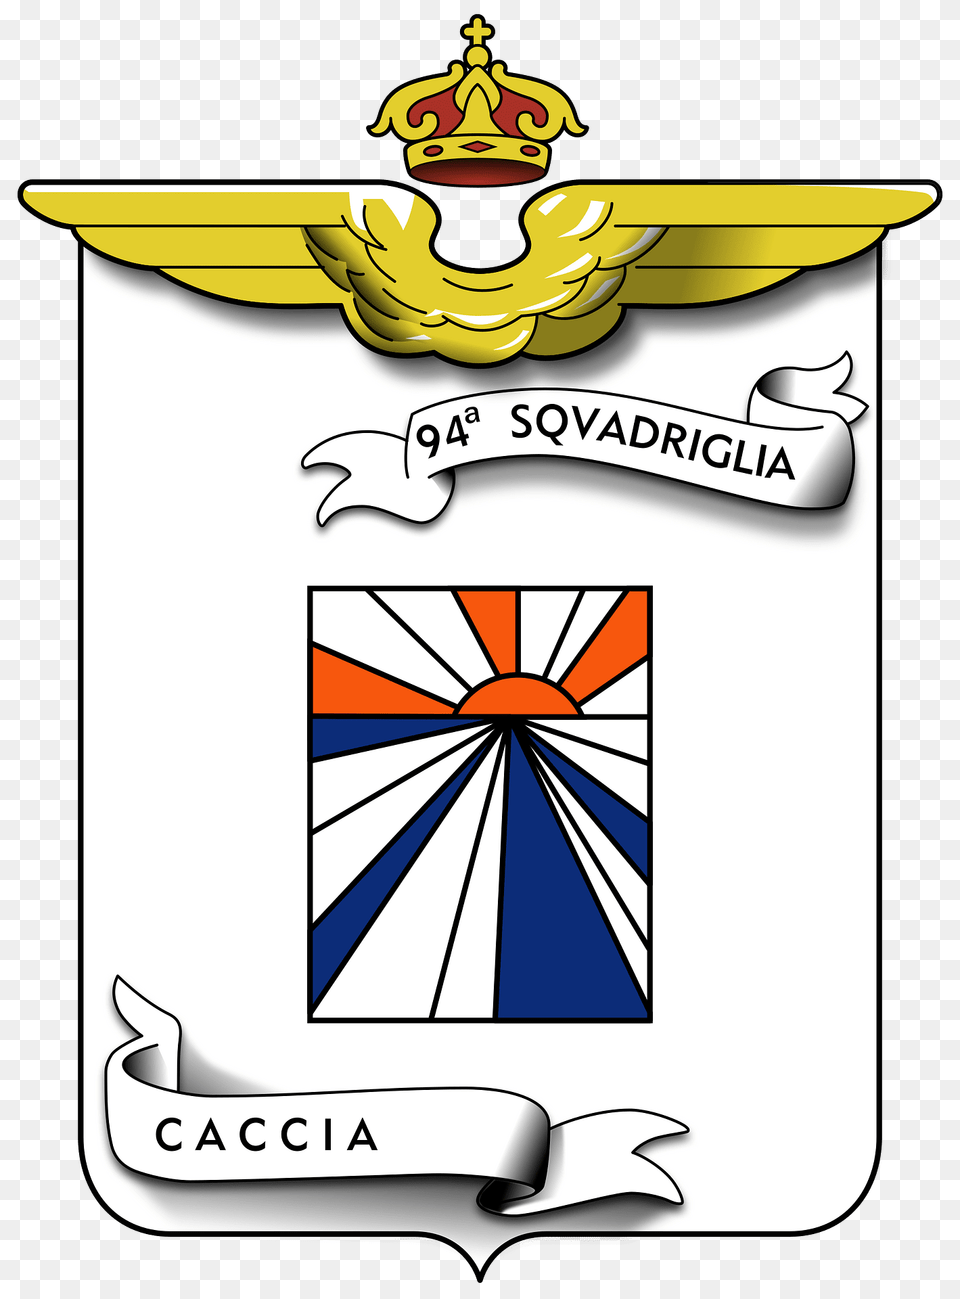 Coa 94 Squadriglia Caccia Clipart, Emblem, Symbol Free Transparent Png